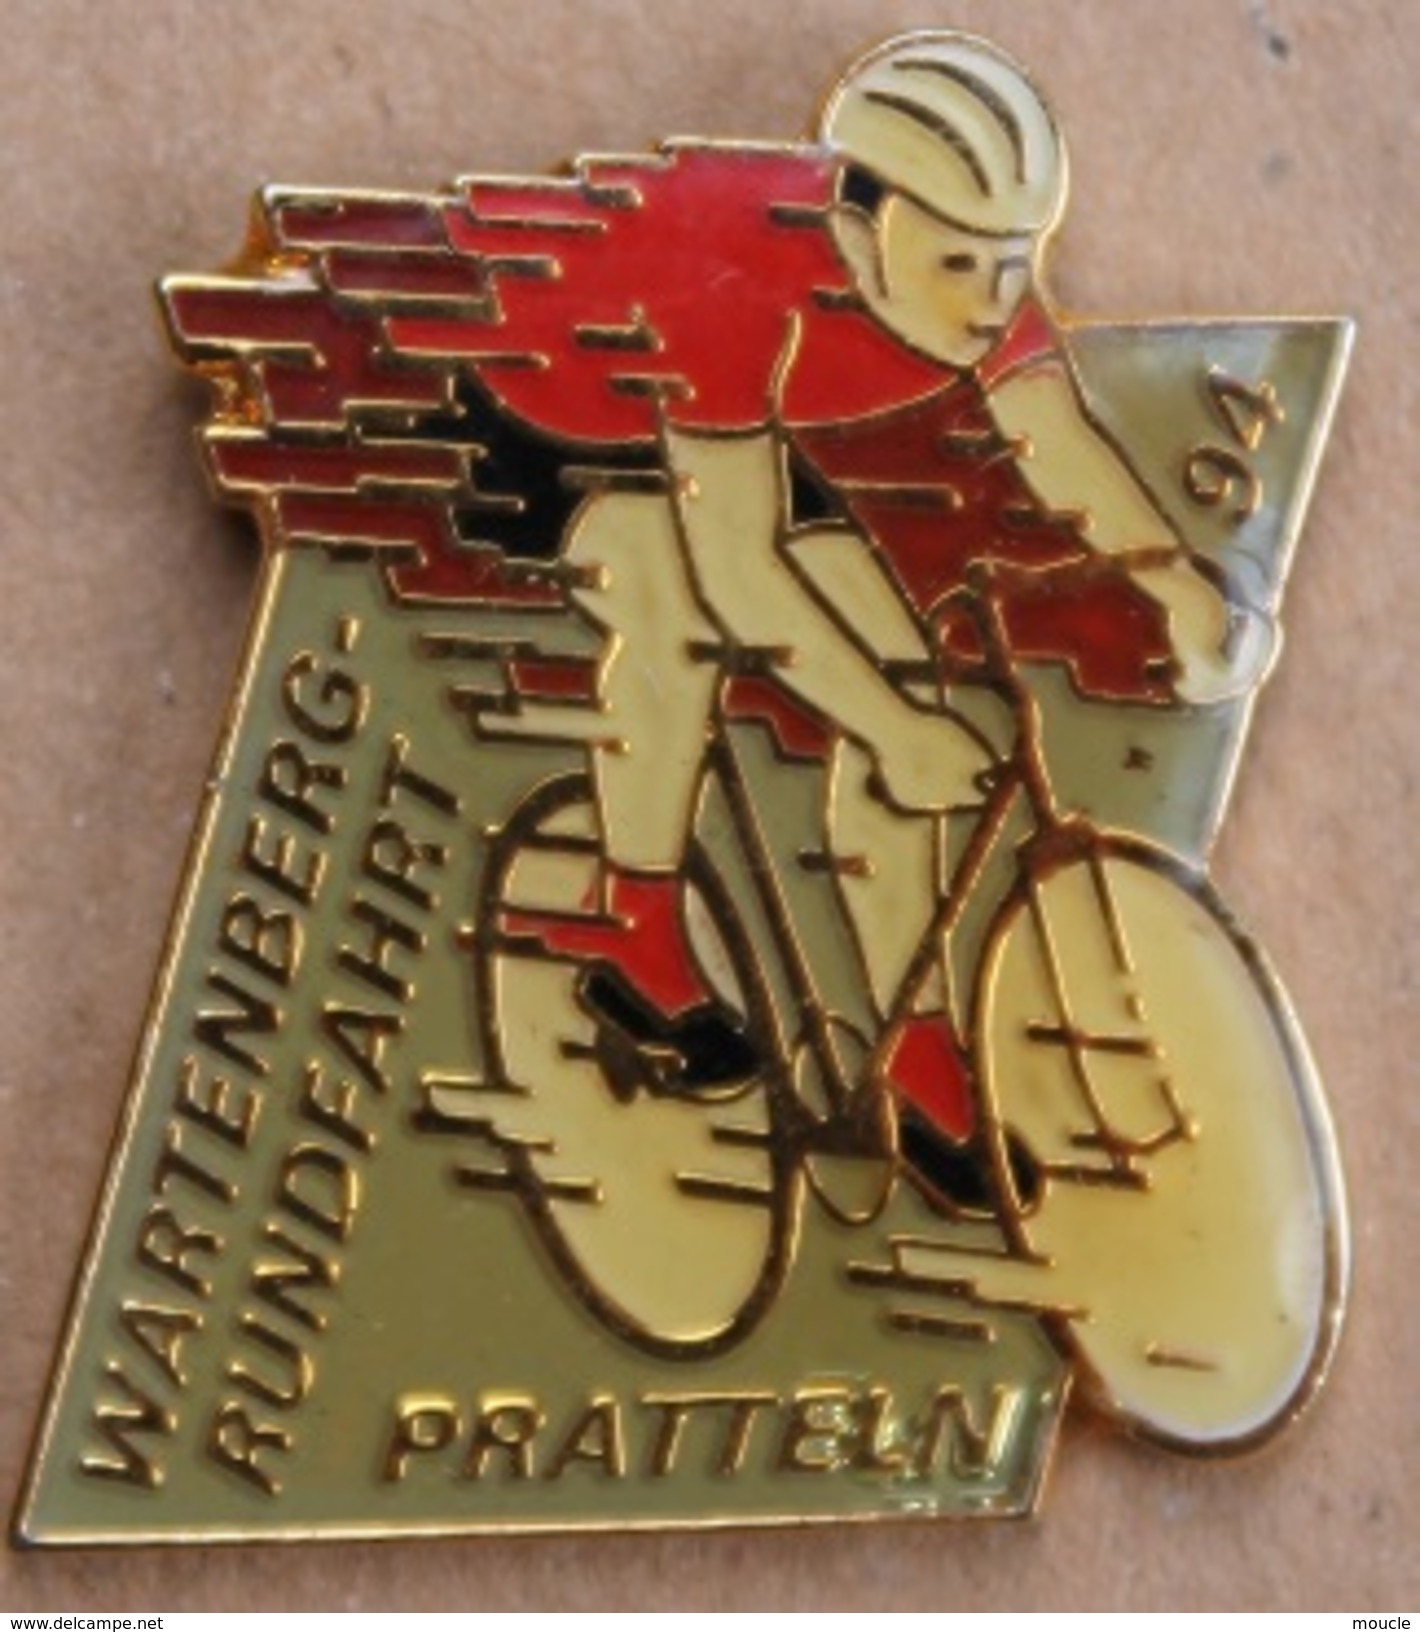 CYCLISME - VELO - CYCLISTE - WARTENBERG RUNDFAHRT - PRATTELN 94 - BIKE -    (17) - Cycling